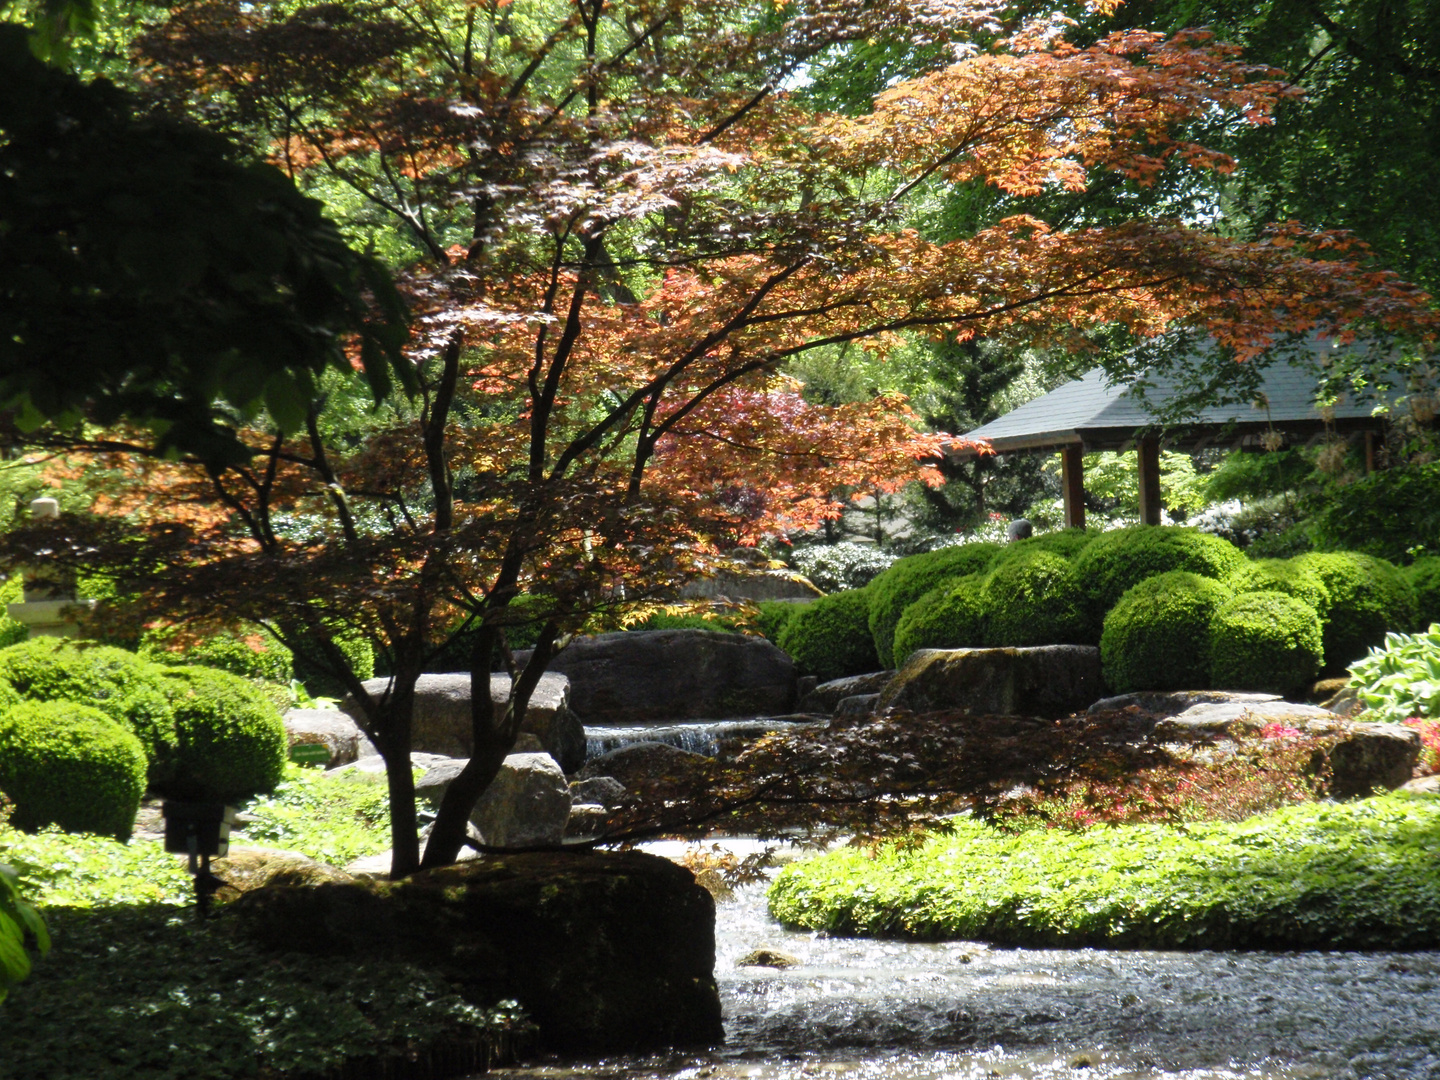 Japanischer Garten - Mai 2012